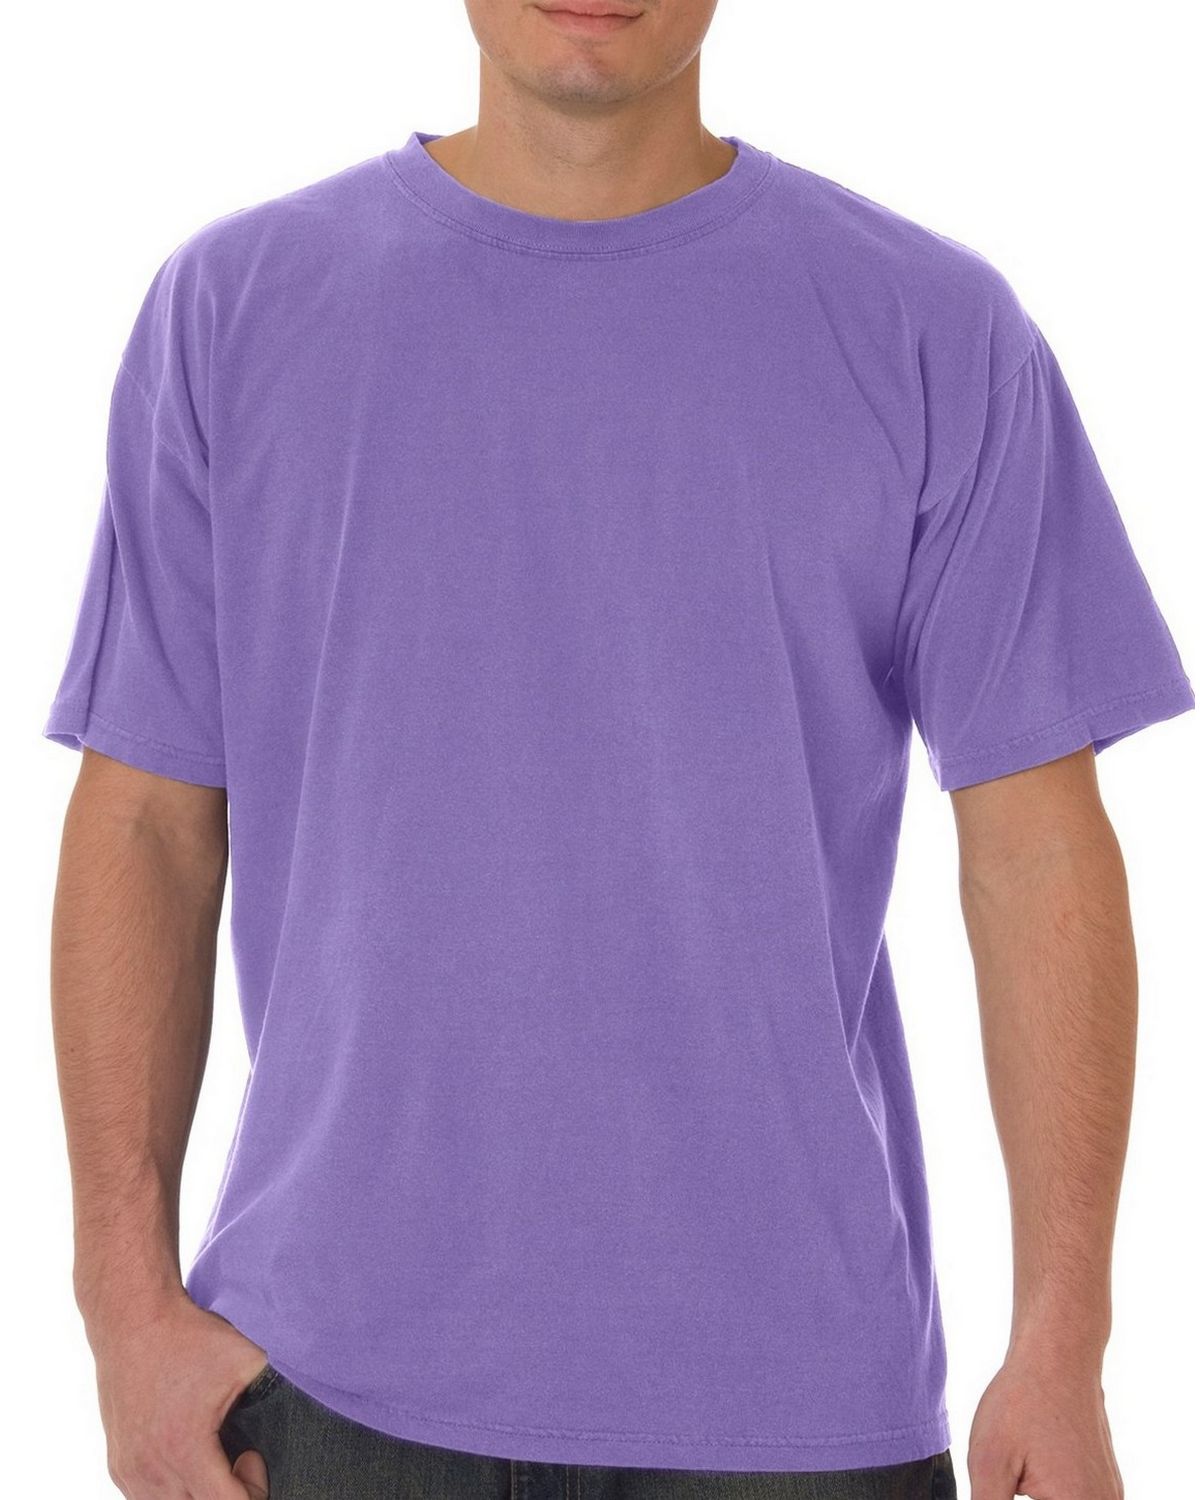 Printful Miami Drip T-Shirt - Heat Colors - Klozahnas Pink / L